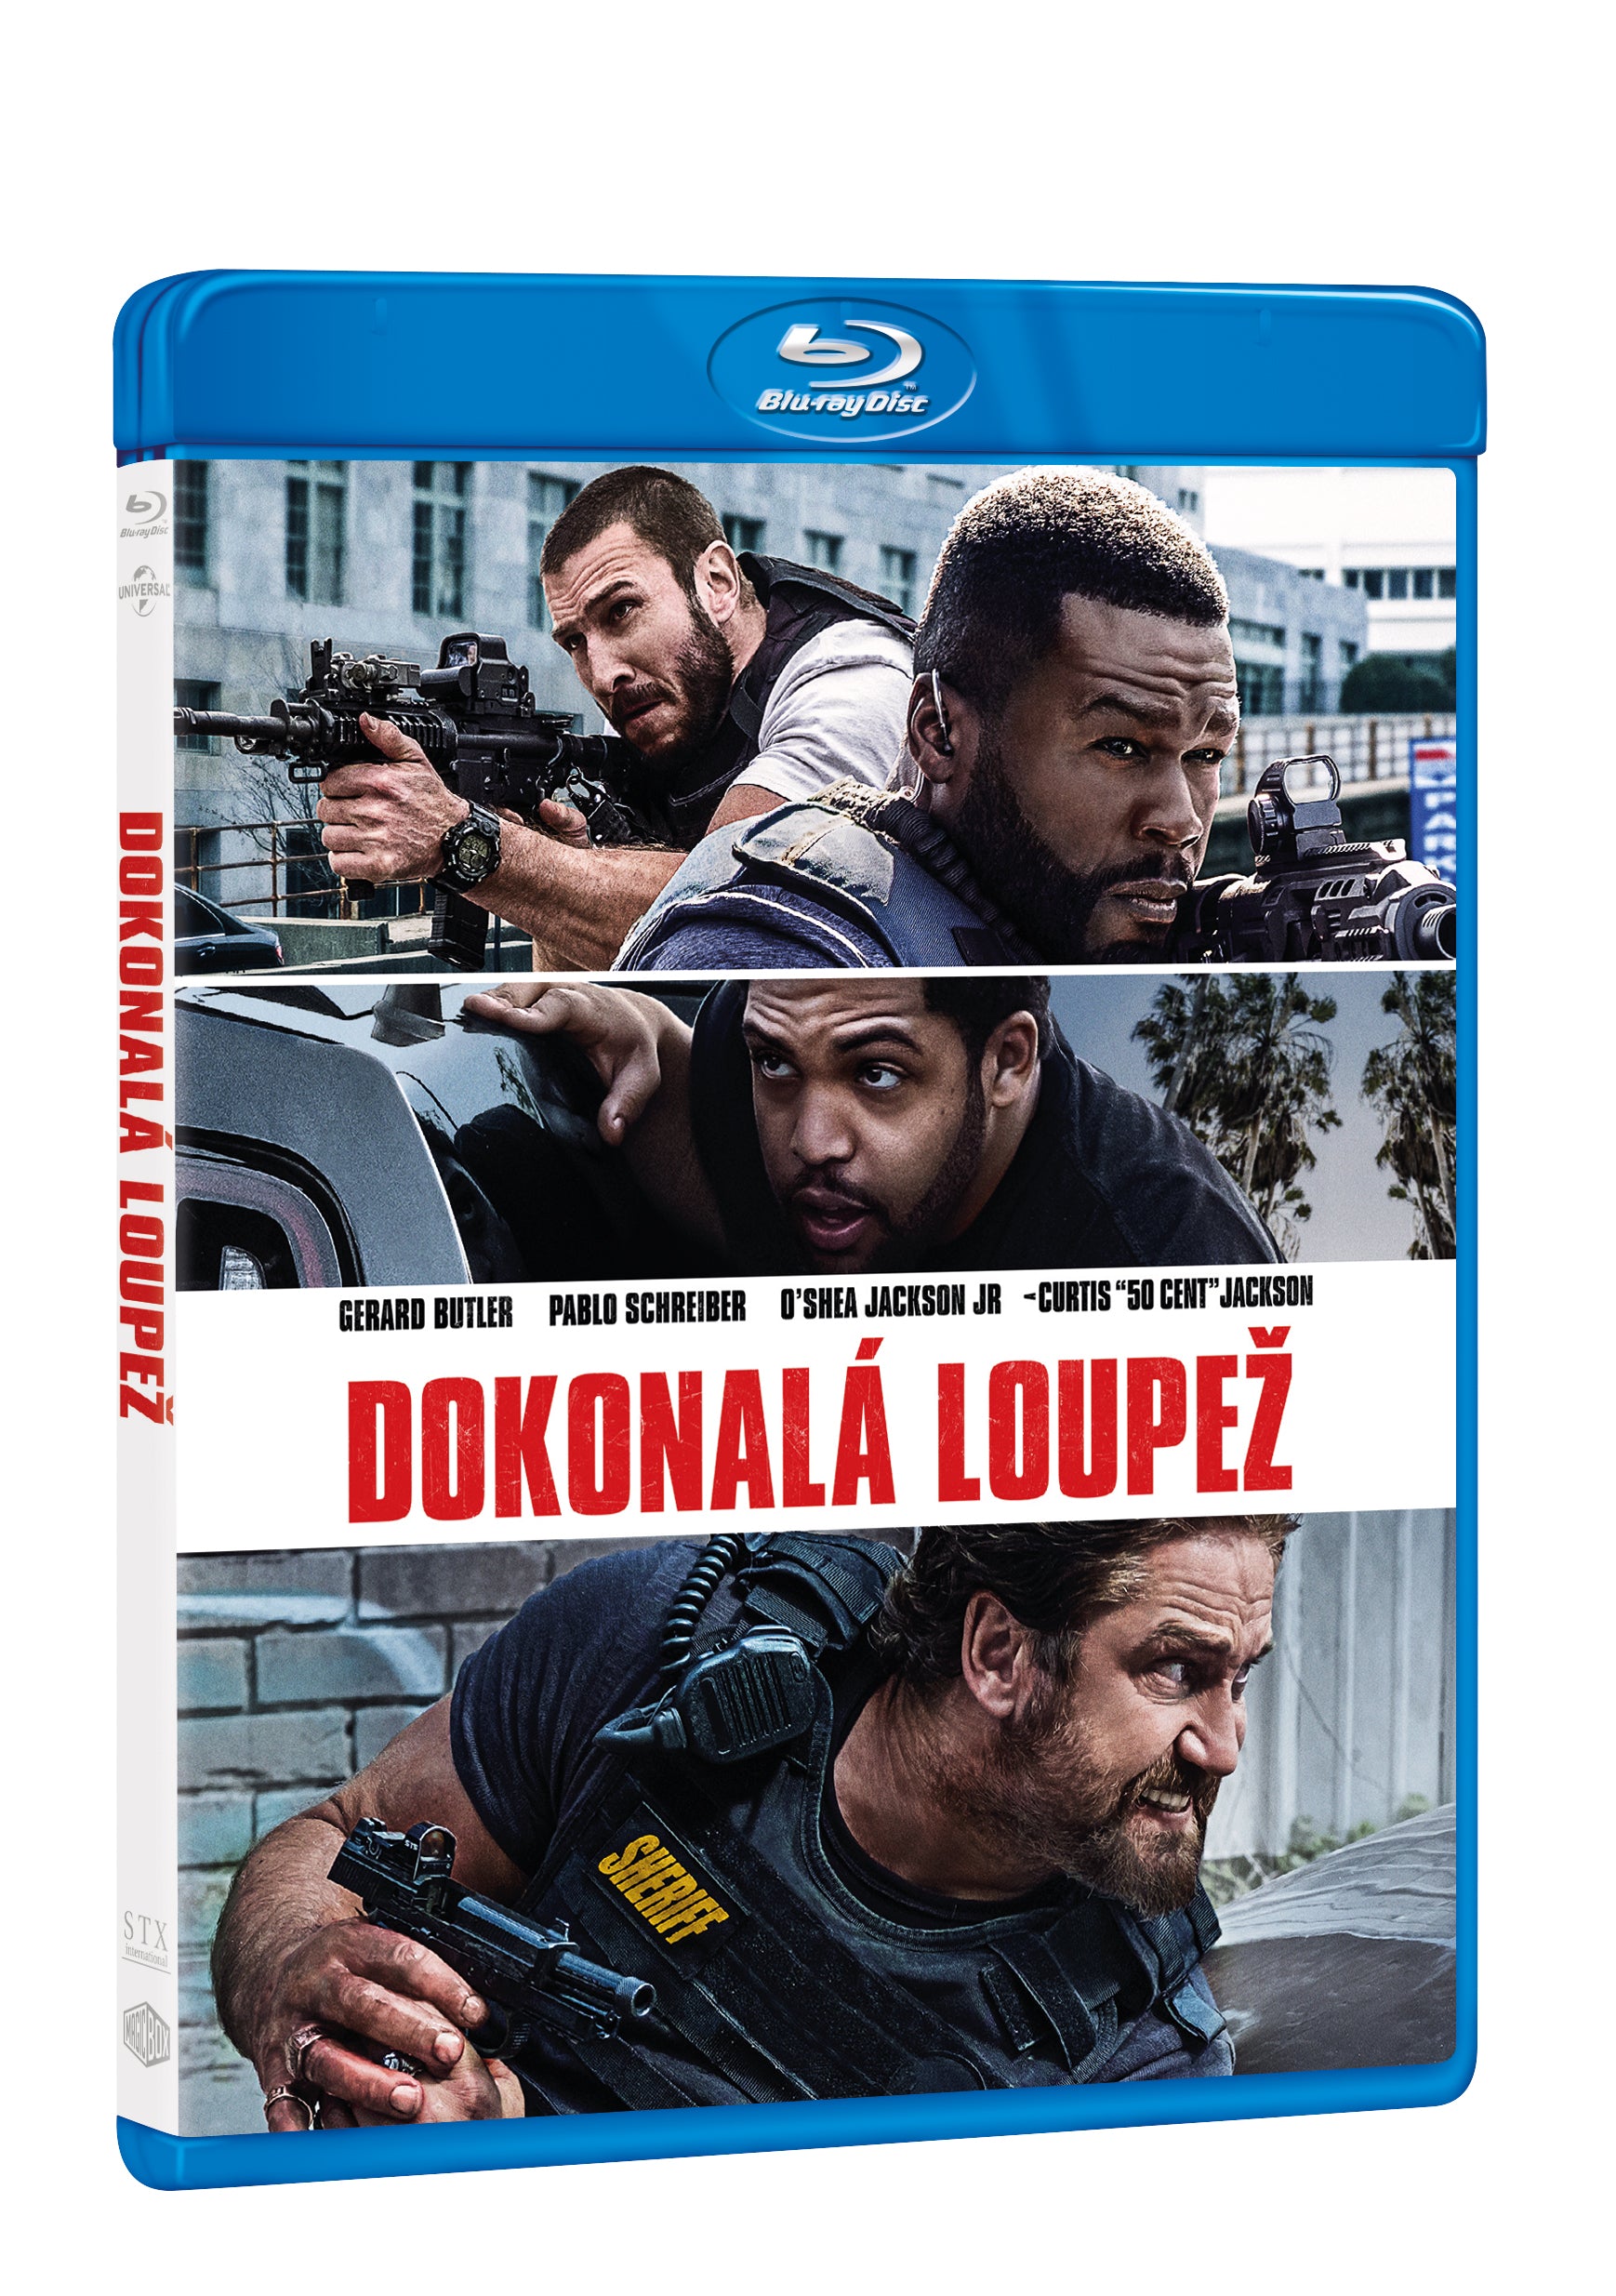 Dokonala loupez BD / Den of Thieves - Czech version